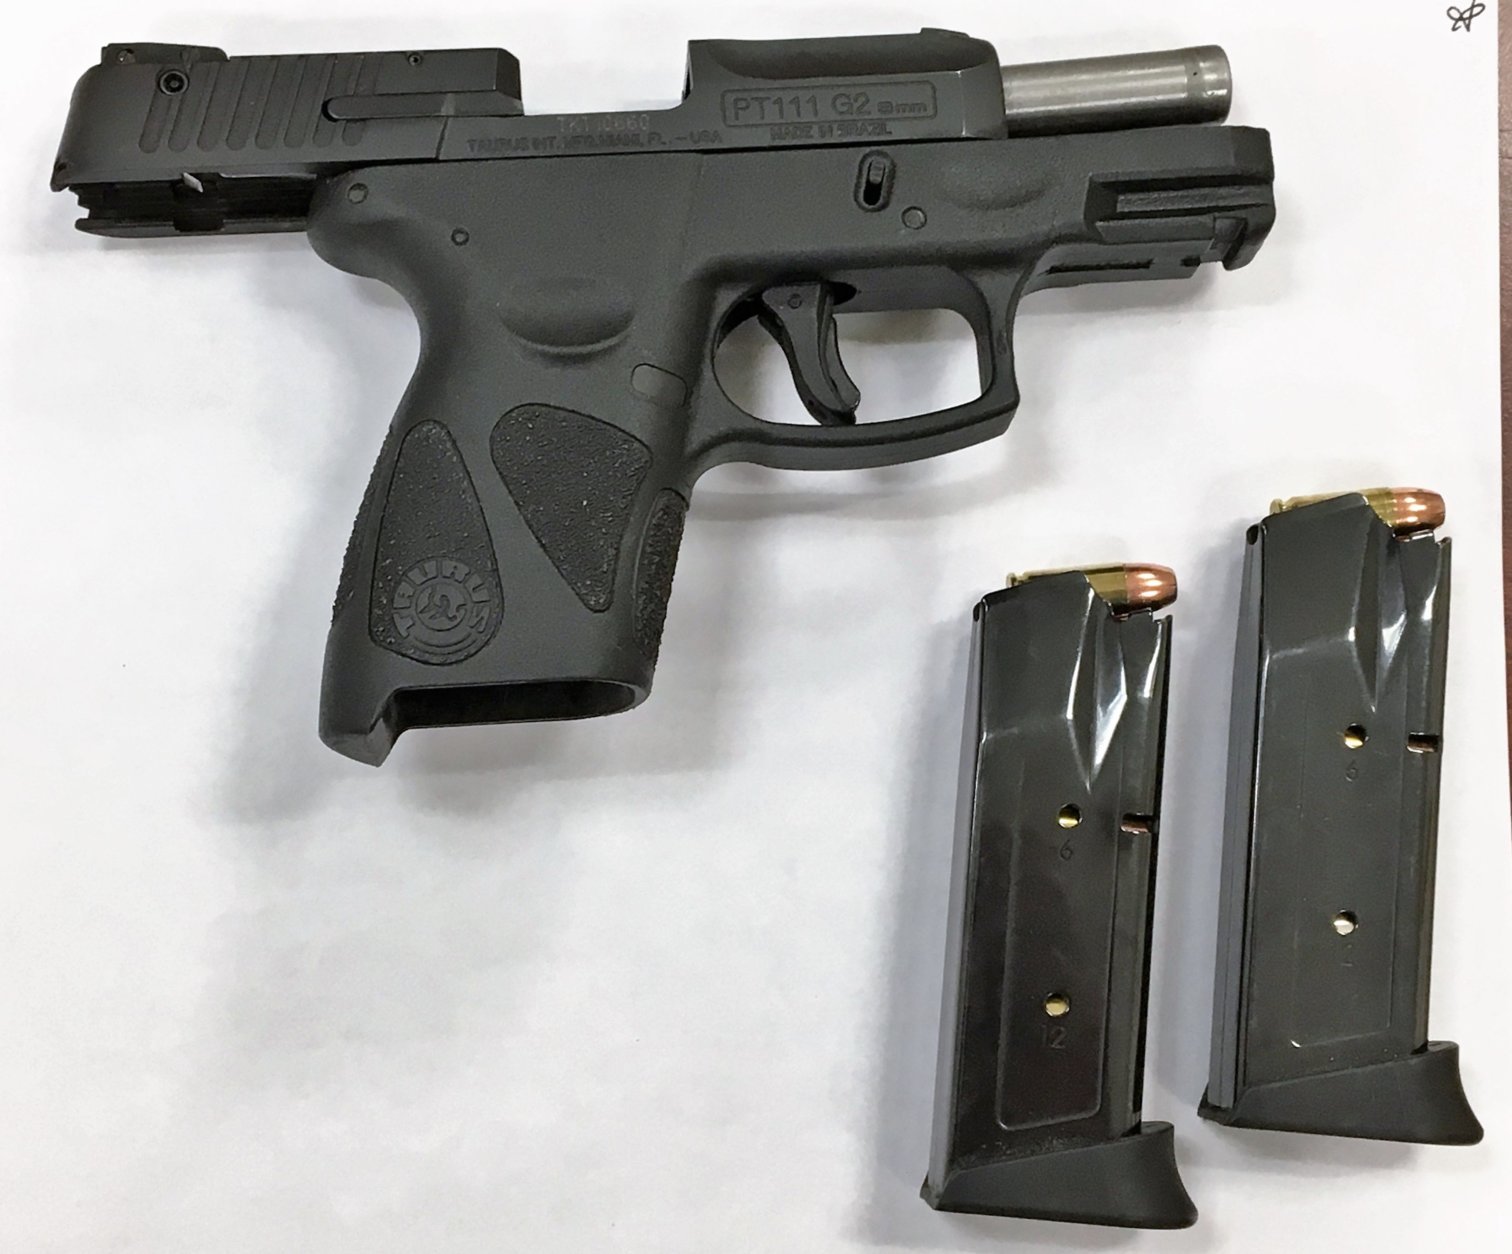 TSA officials found this loaded gun at BWI Marshall Airport. (Courtesy TSA)